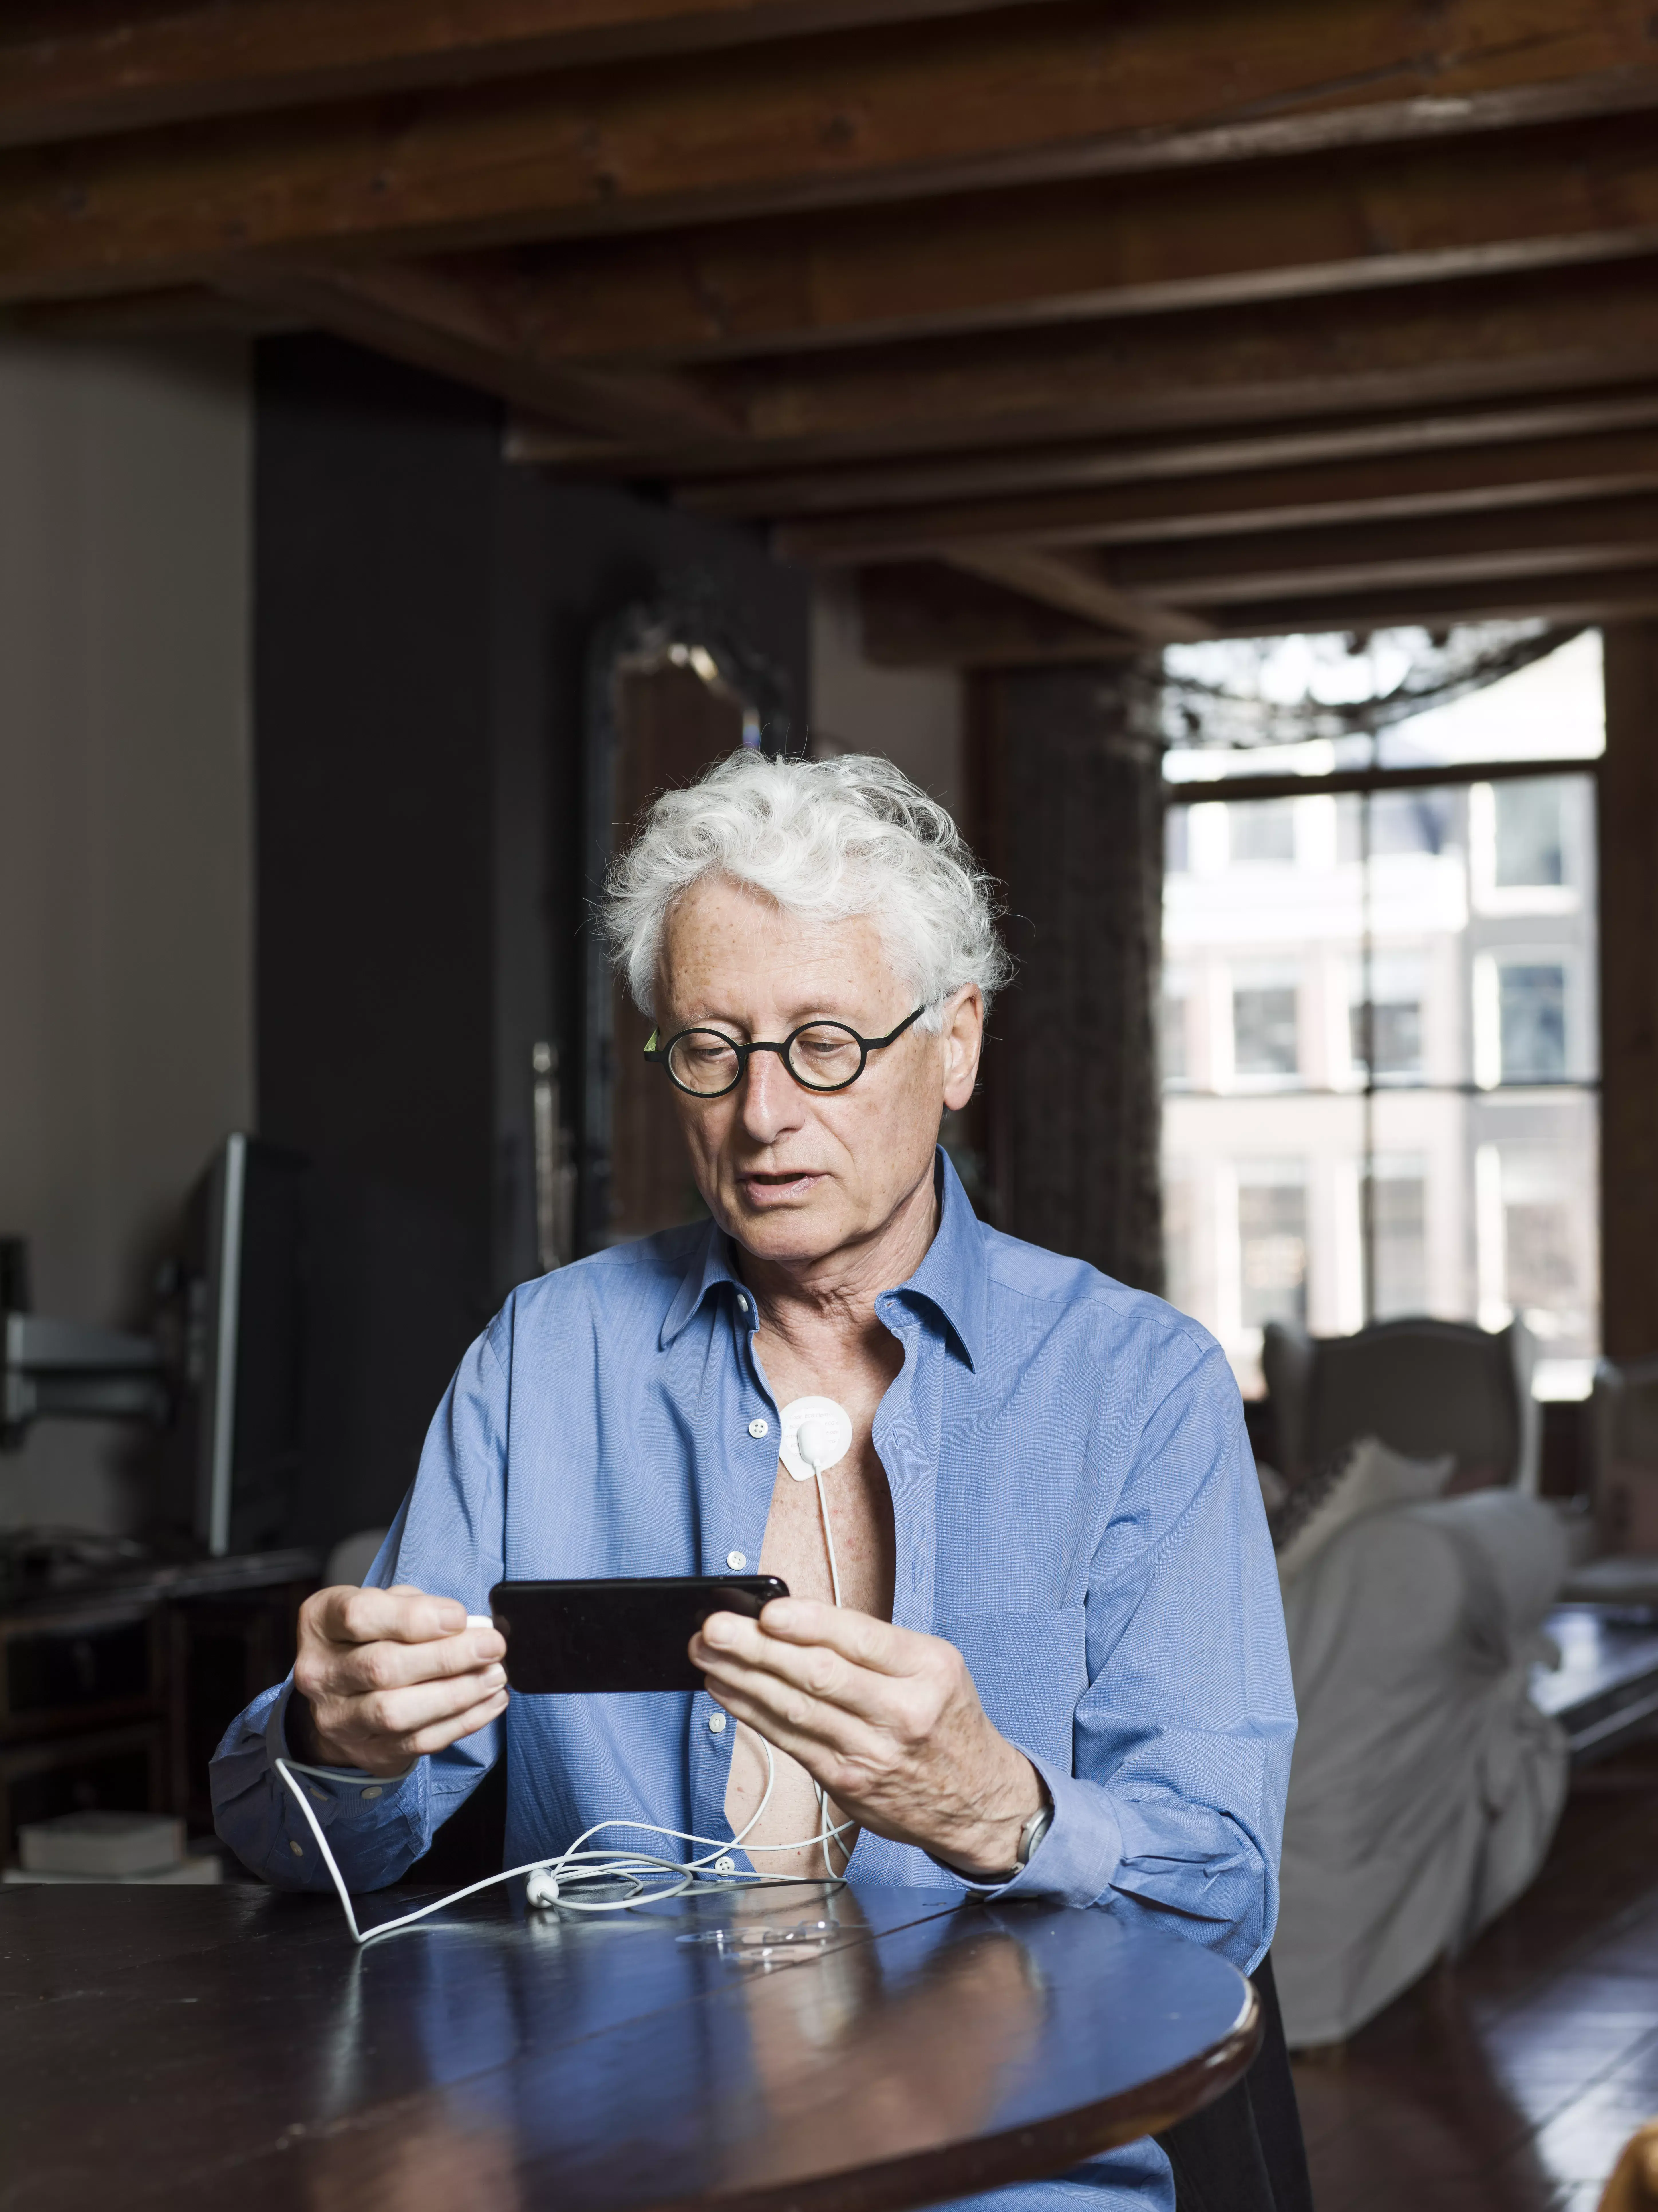 Oudere man met bril zit aan tafel en kijkt op zijn telefoon